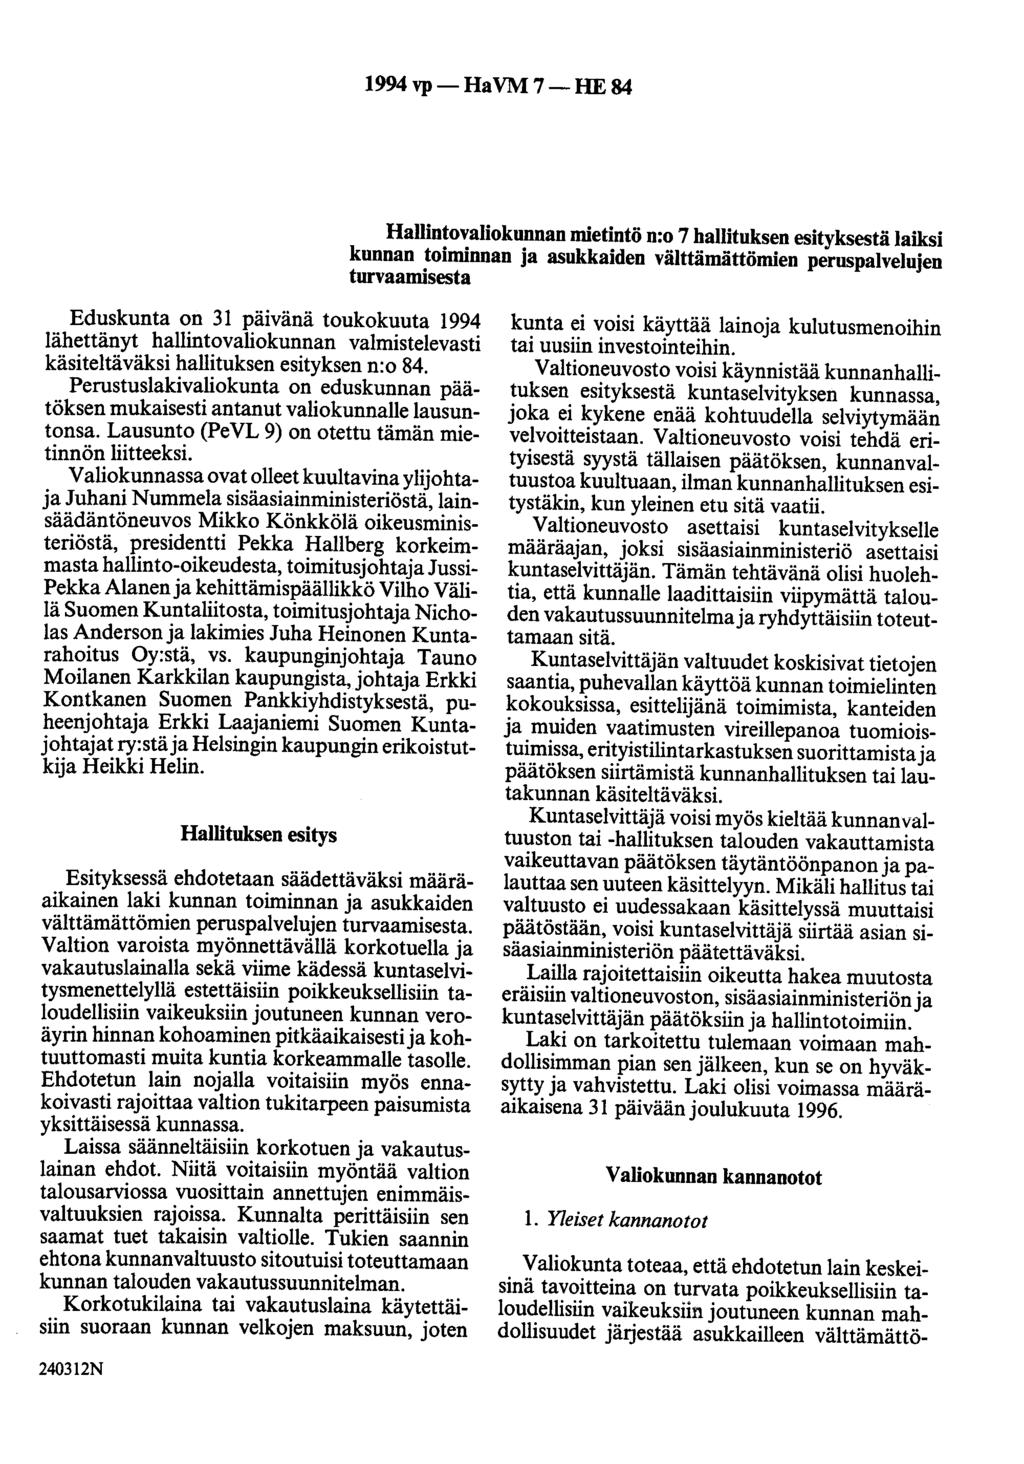 1994 vp- HaVM 7-HE 84 Hallintovaliokunnan mietintö n:o 7 hallituksen esityksestä laiksi kunnan toiminnan ja asukkaiden välttämättömien peruspalvelujen turvaamisesta Eduskunta on 31 päivänä toukokuuta